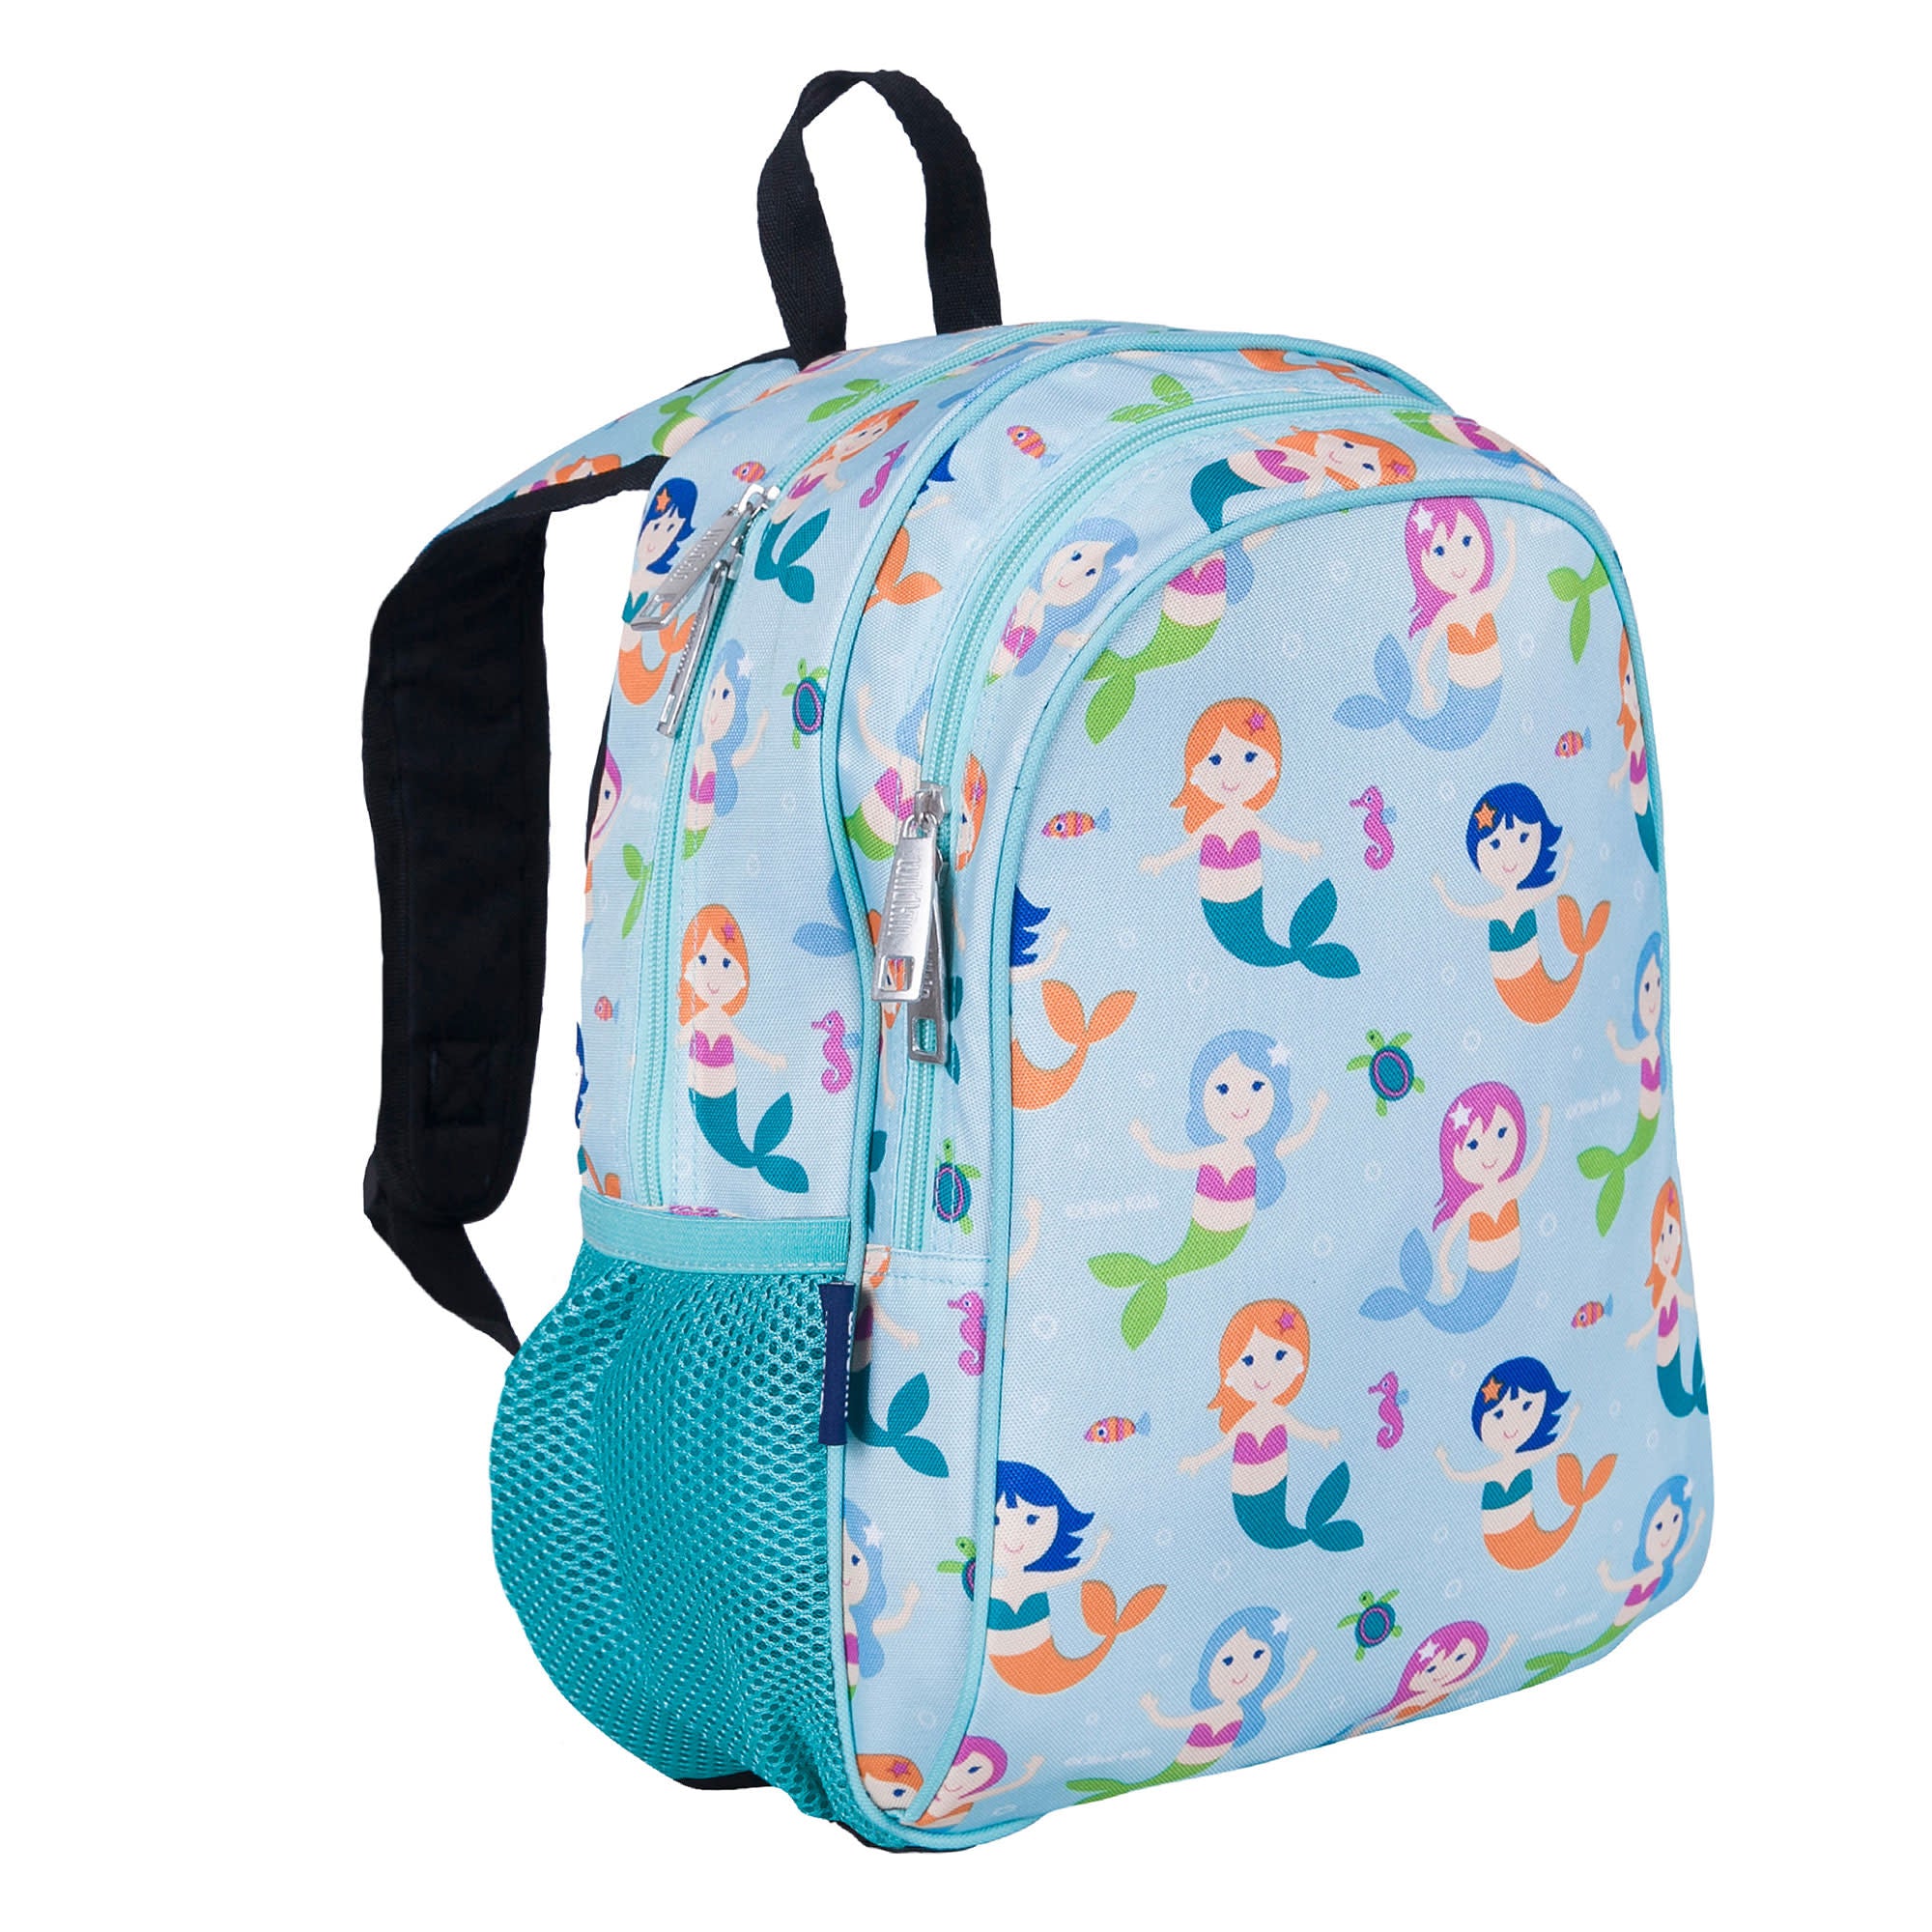 Mermaids Backpack